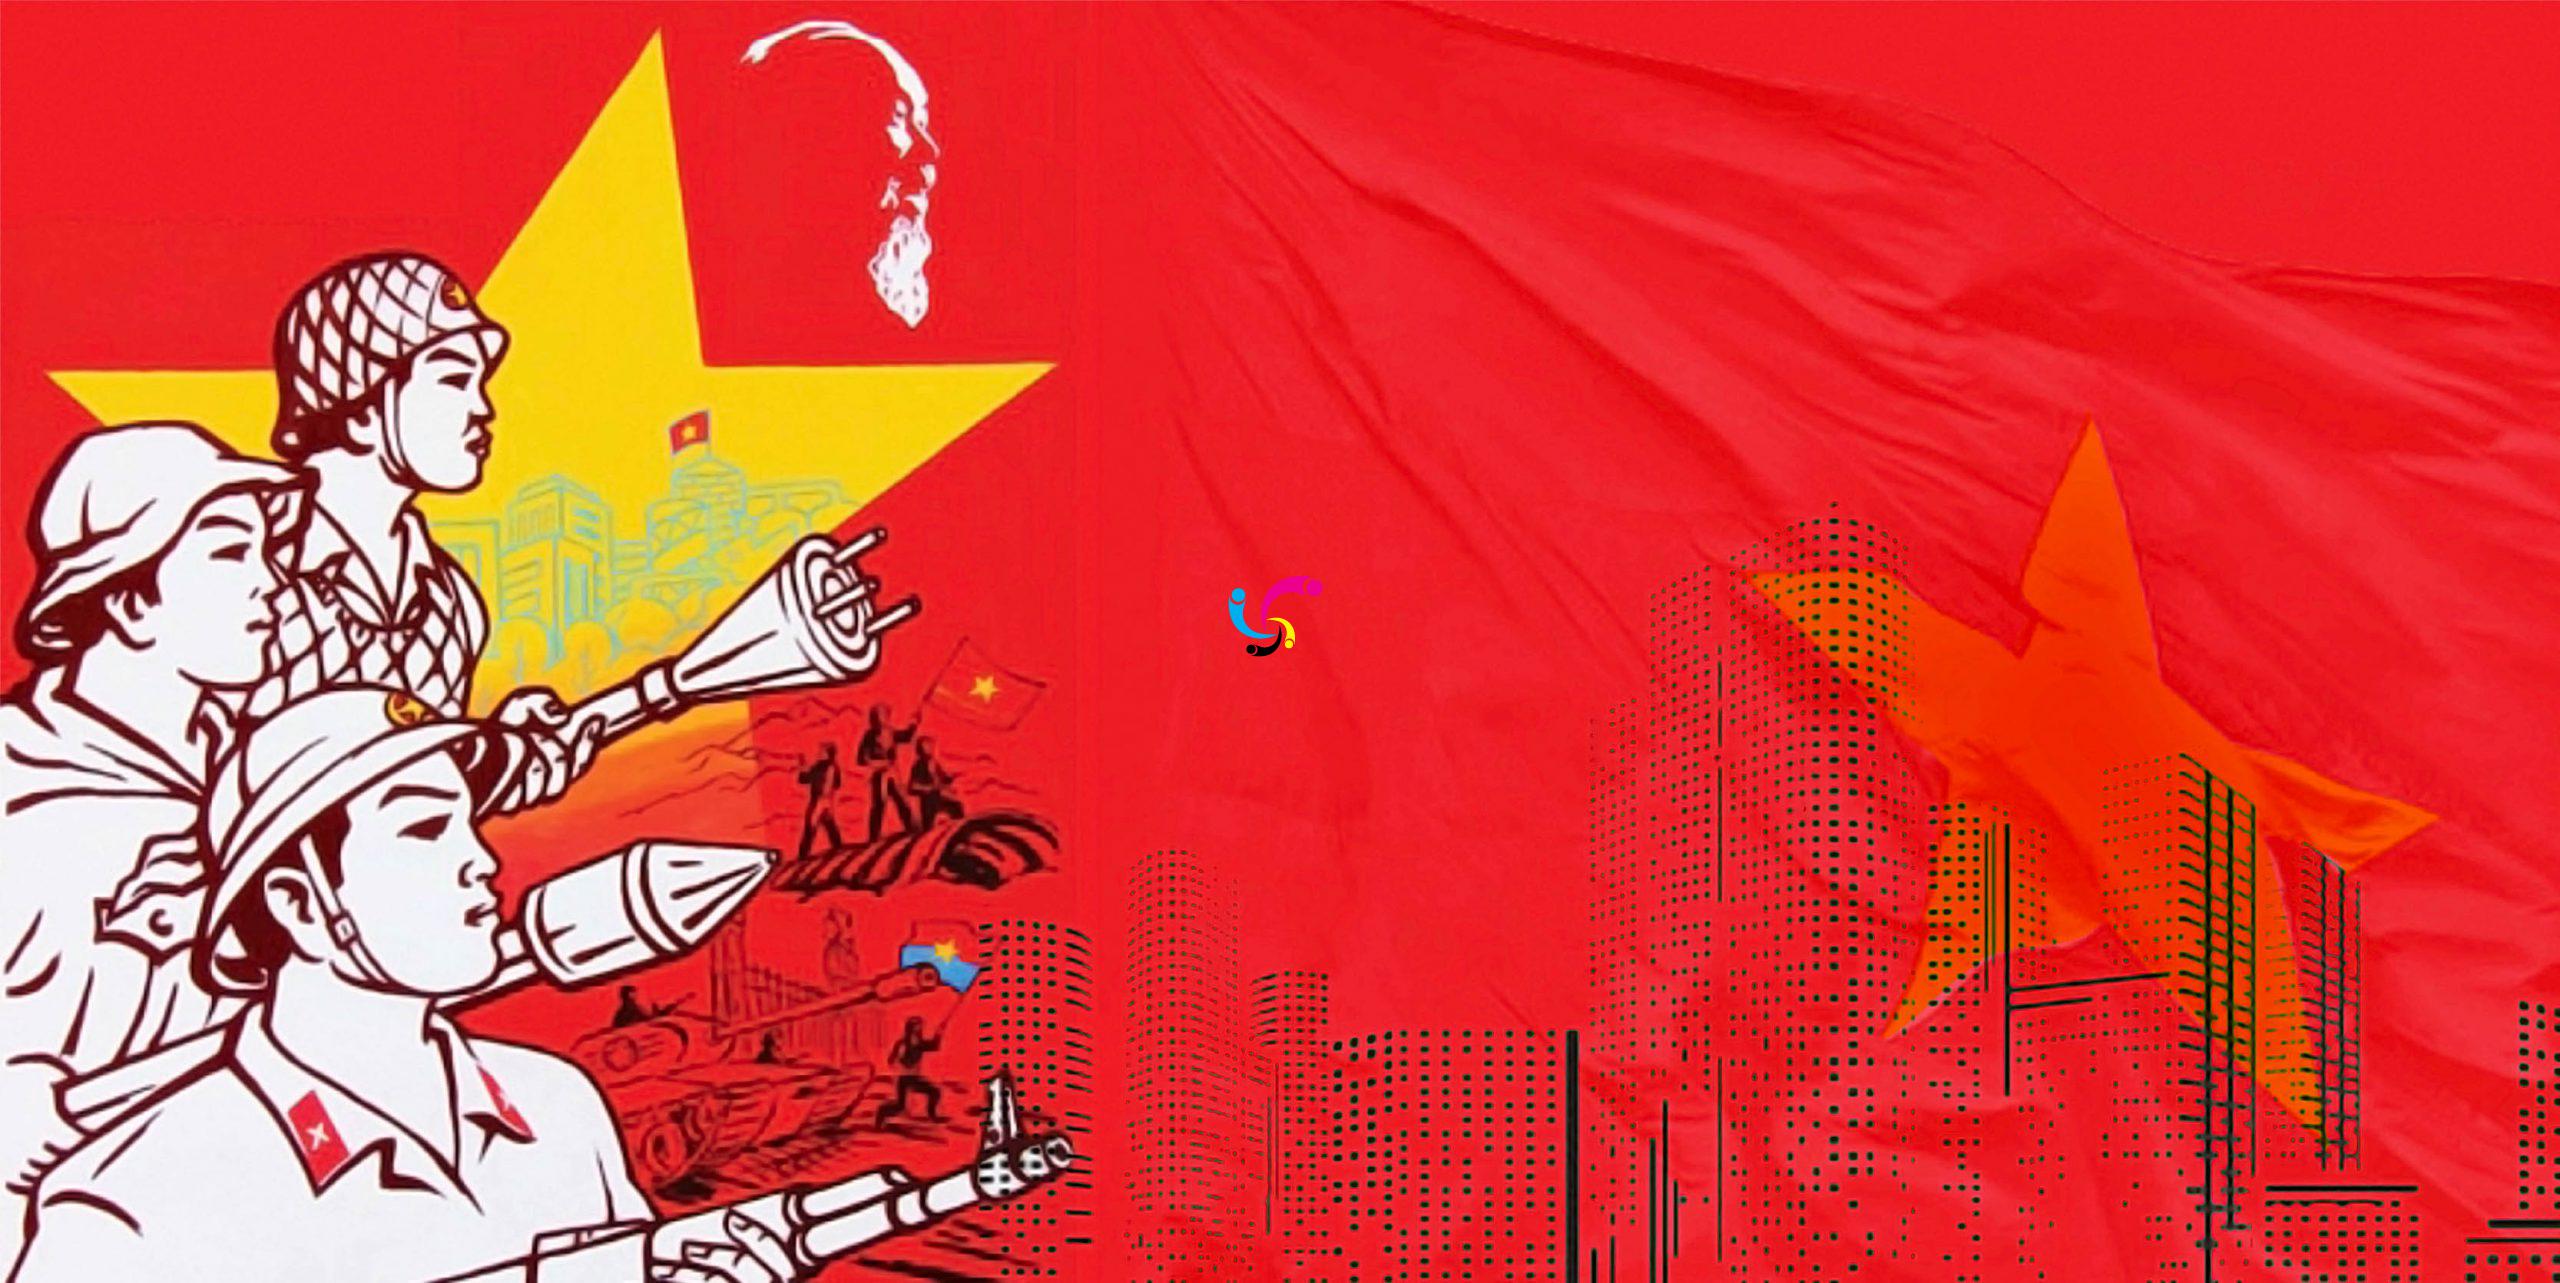 Thể hiện tình yêu dành cho đất nước qua hình ảnh cờ đỏ sao vàng đẹp miễn phí. Chúng tôi giới thiệu đến bạn những mẫu cờ đỏ sao vàng đa dạng với nhiều phong cách khác nhau. Hãy tạo ra sự độc đáo cho chiếc máy tính của bạn với những bức hình độc quyền này.